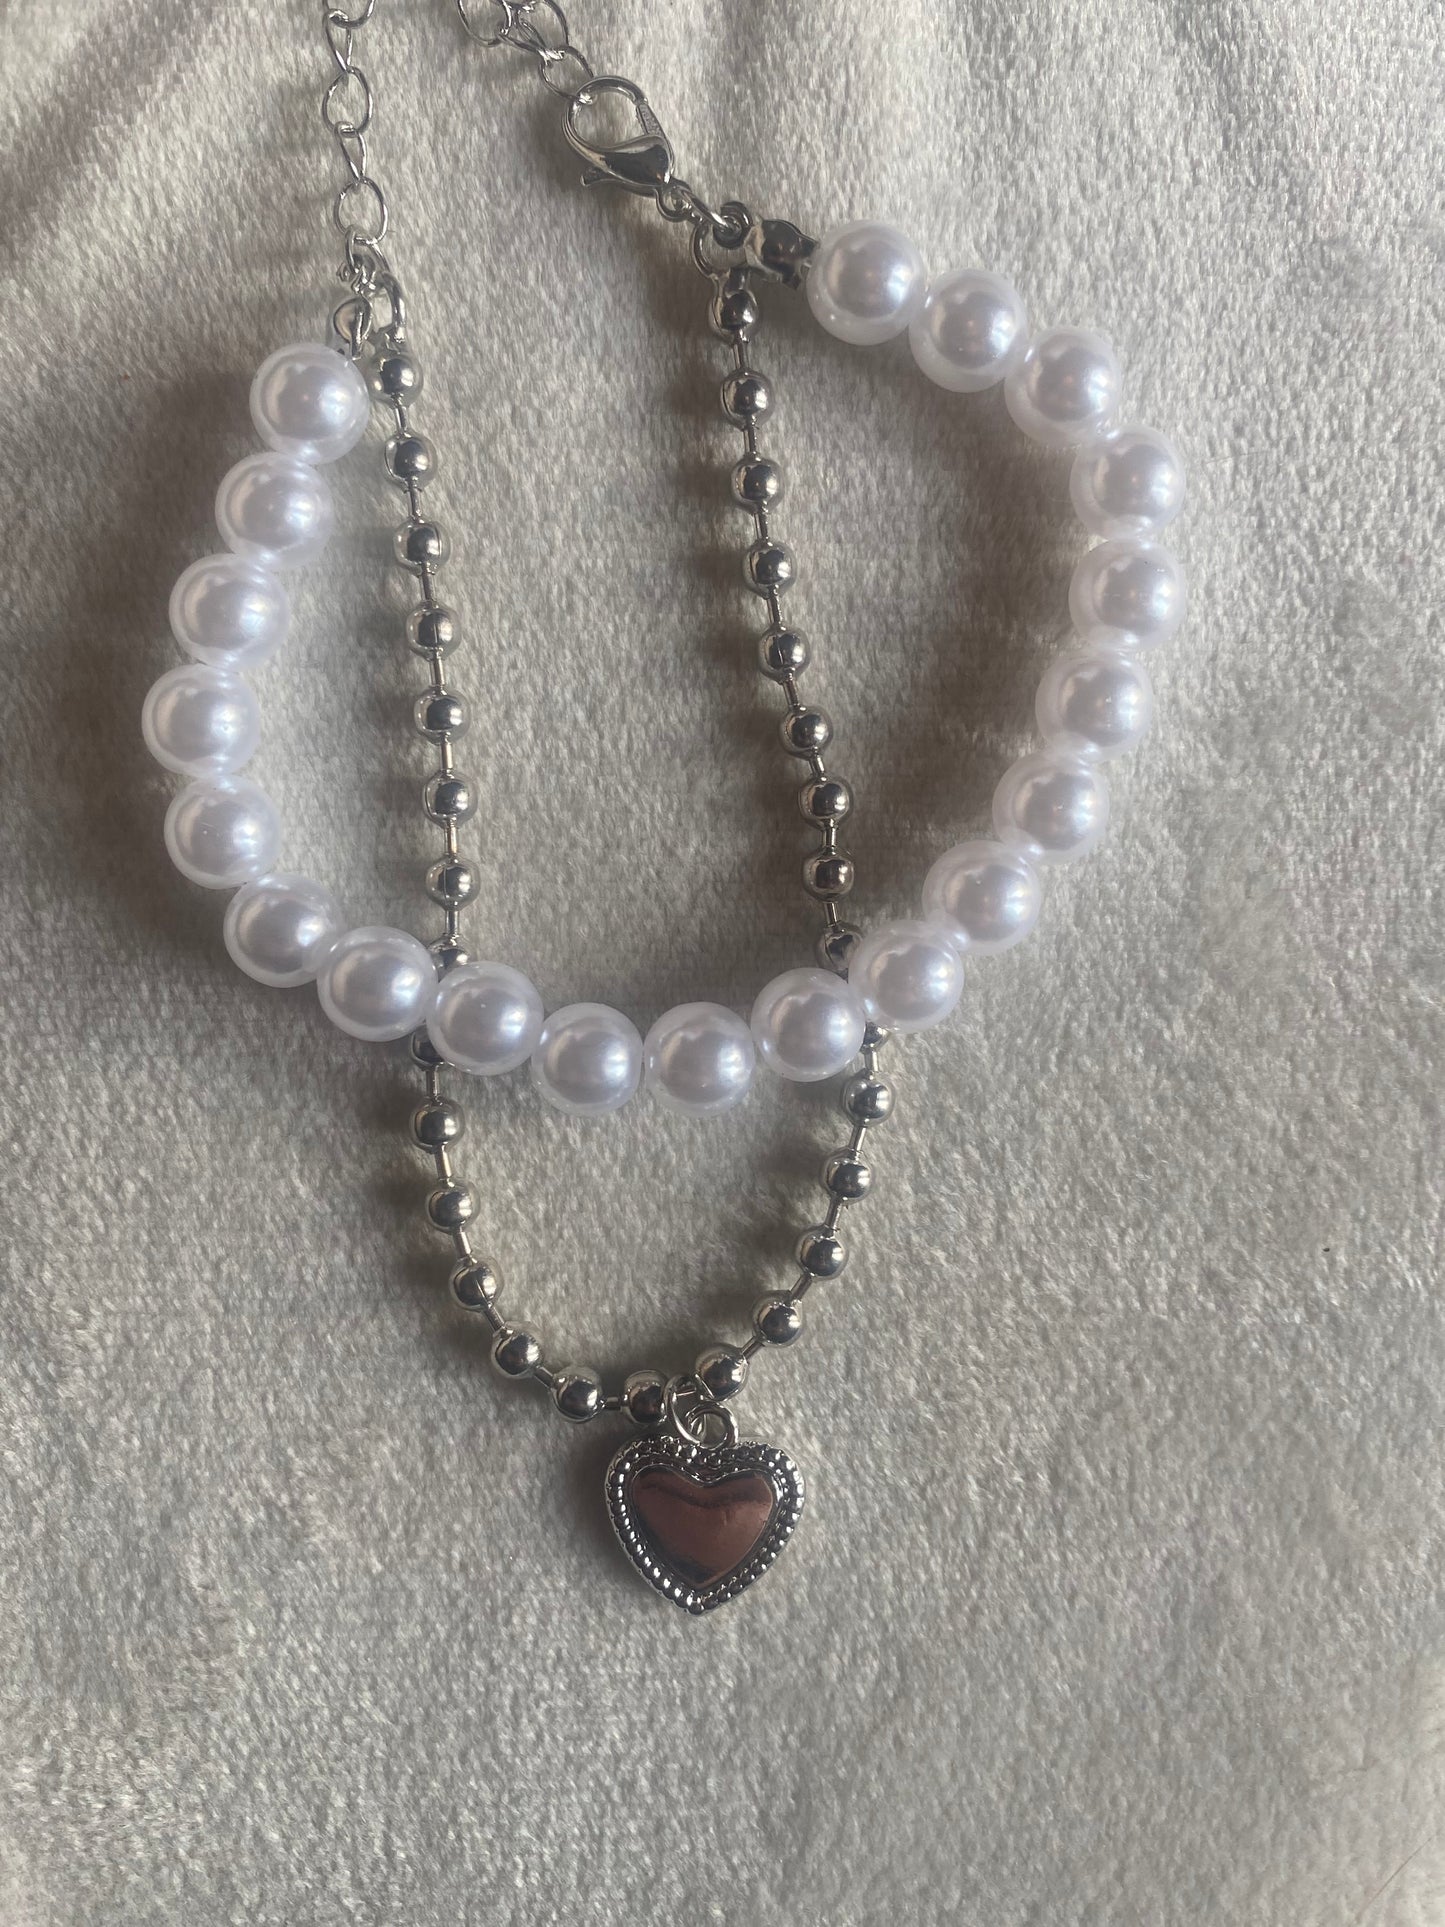 Heart of Pearls Bracelet